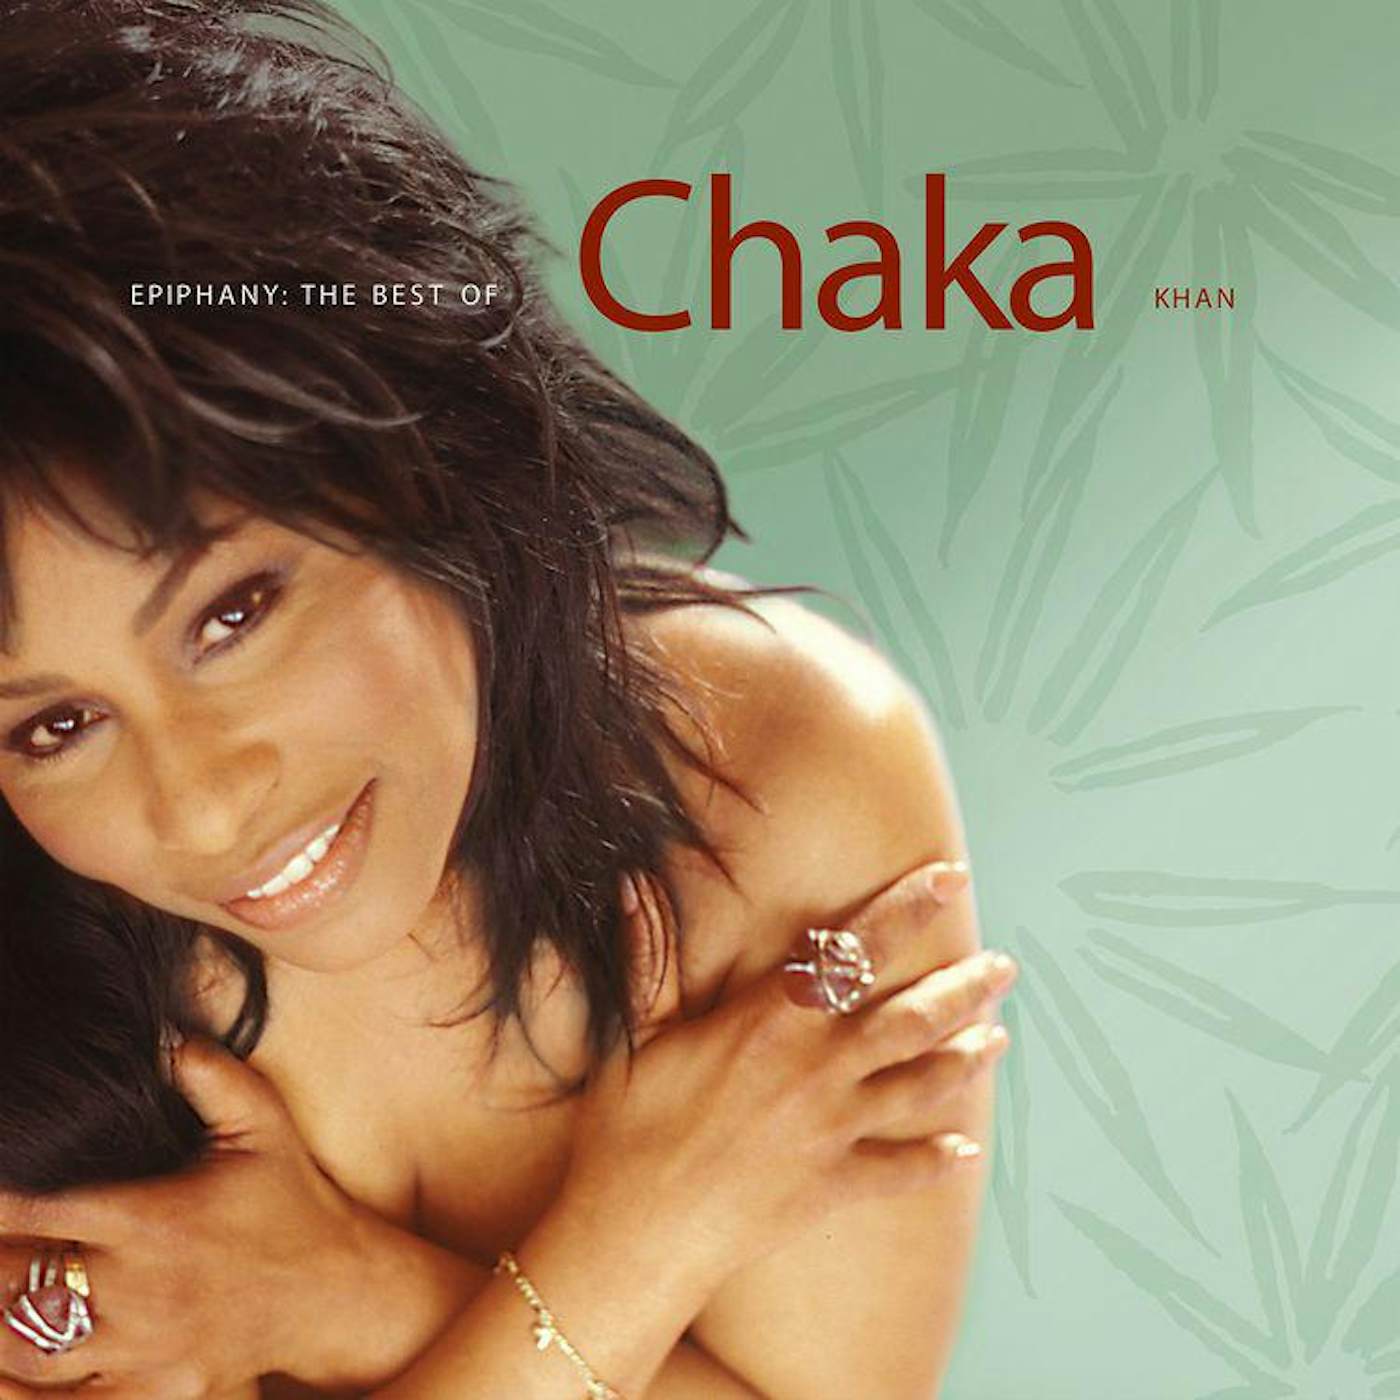 EPIPHANY: THE BEST OF CHAKA KHAN (BURGUNDY VINYL) Vinyl Record